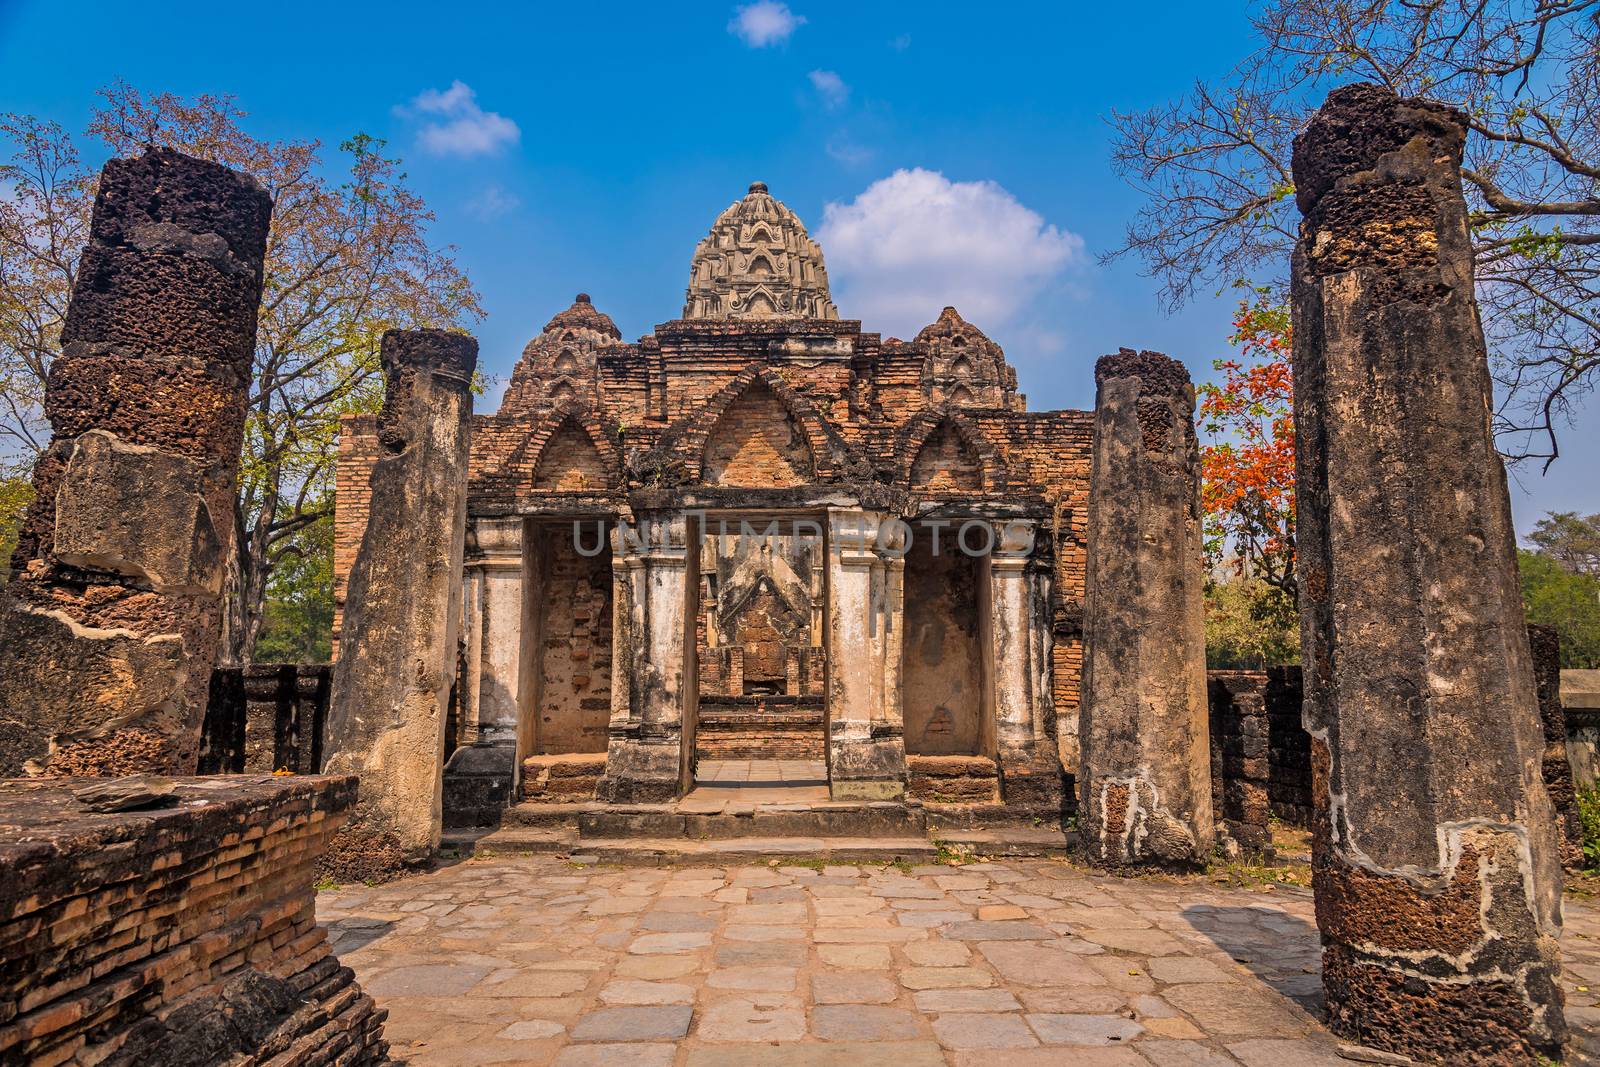 Wat si sawai ruins by neelsky